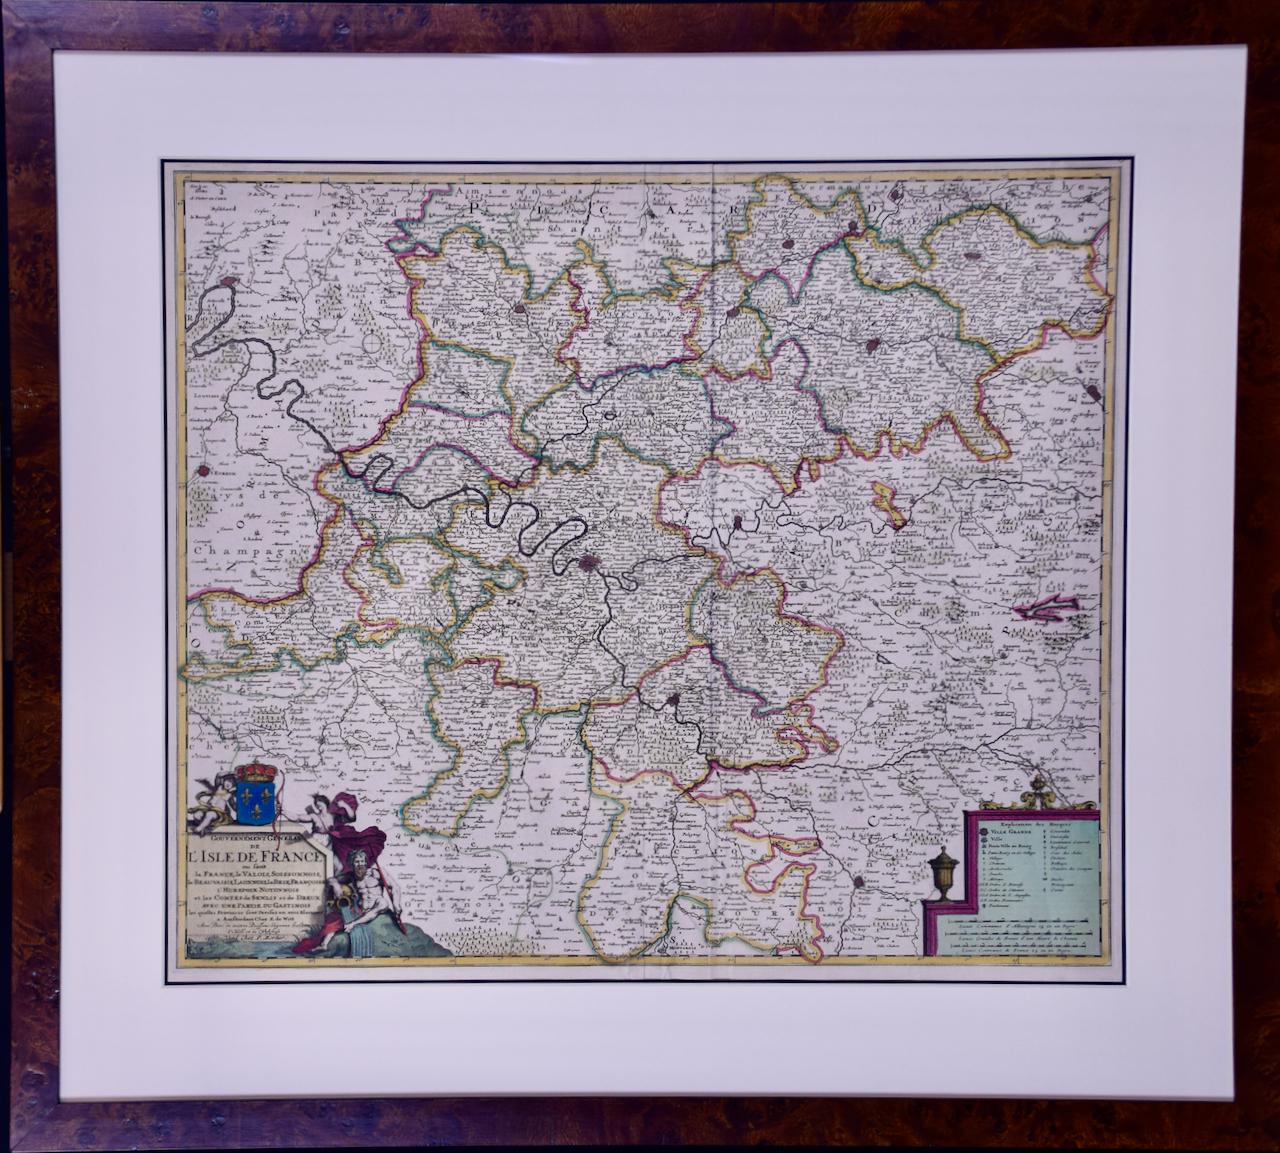 L'Isle de France : une carte du XVIIe siècle colorée à la main par De Wit 